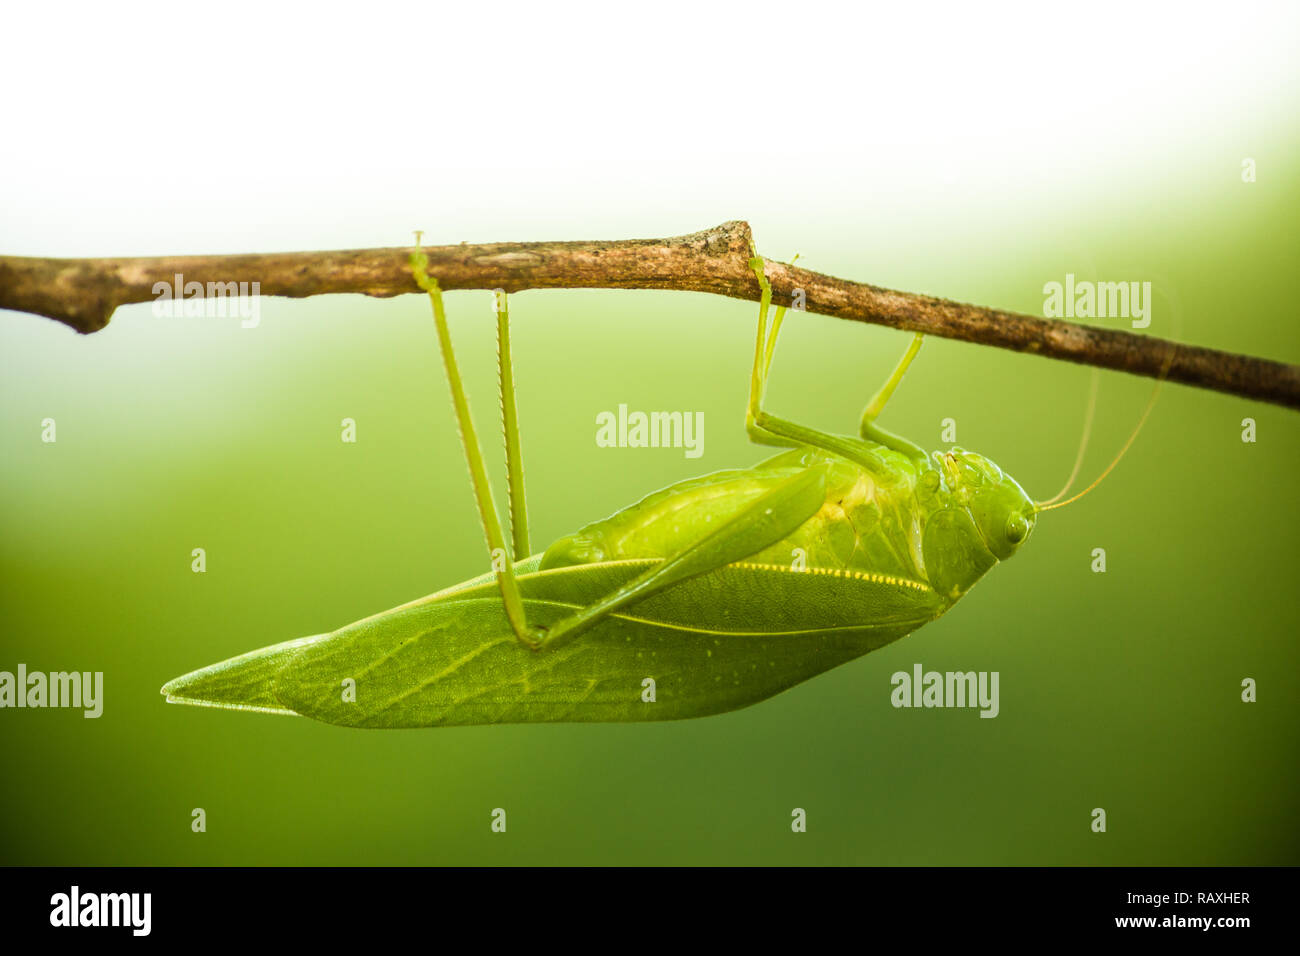 Green Bush Cricket, katydid oder lange-horned Grasshopper (Insekt Familie Tettigoniidae) zu einem Ast Holzstab Makro Nahaufnahme mit l angeschlossen Stockfoto